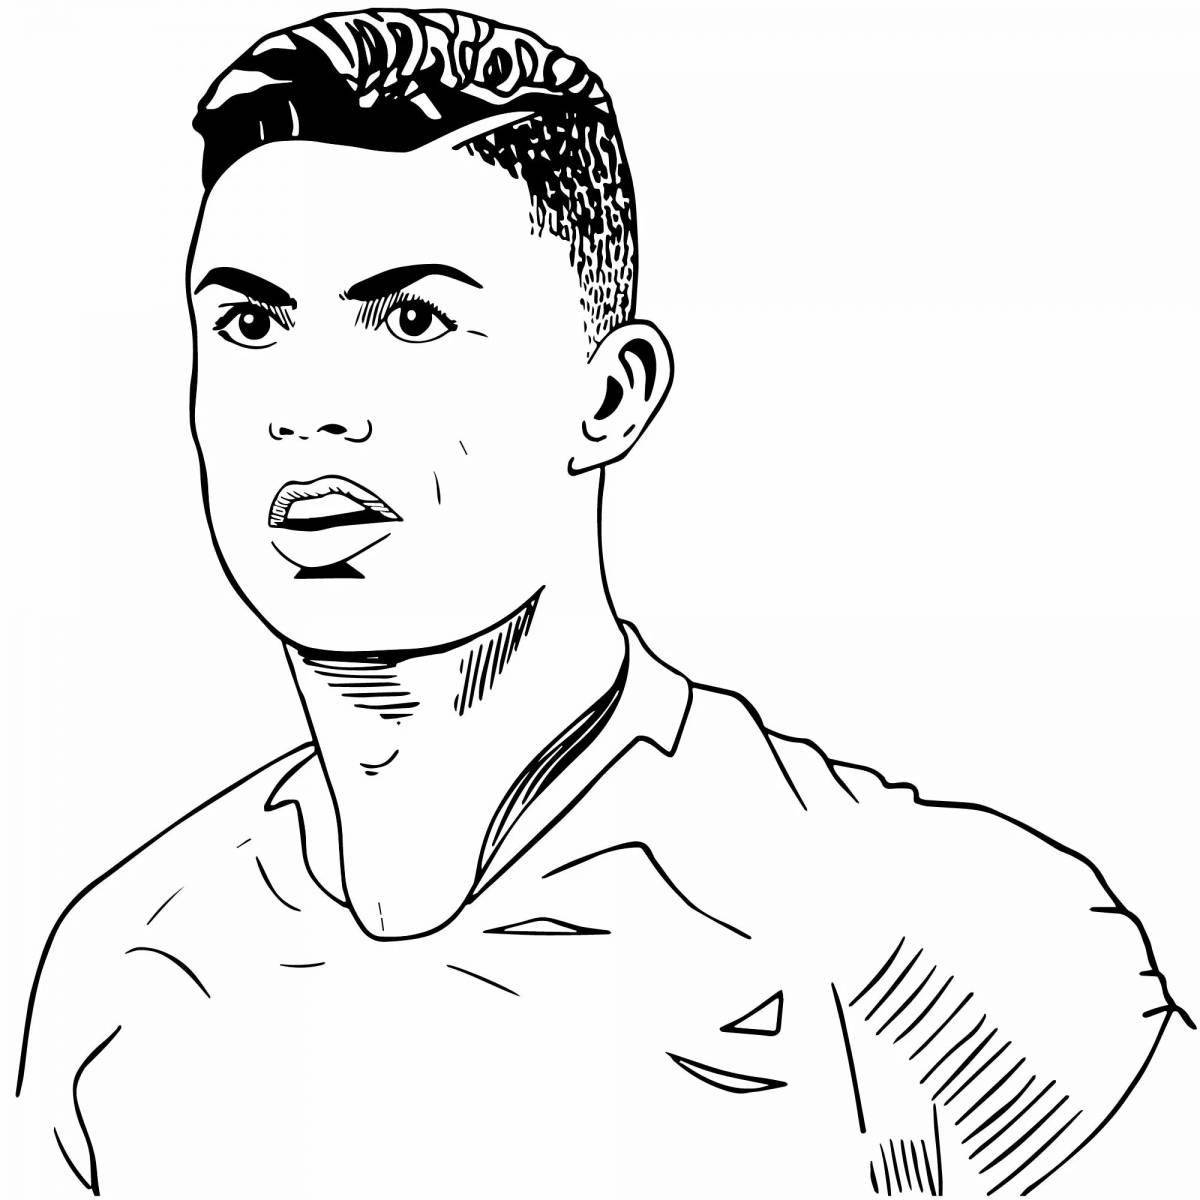 Ronaldo #7